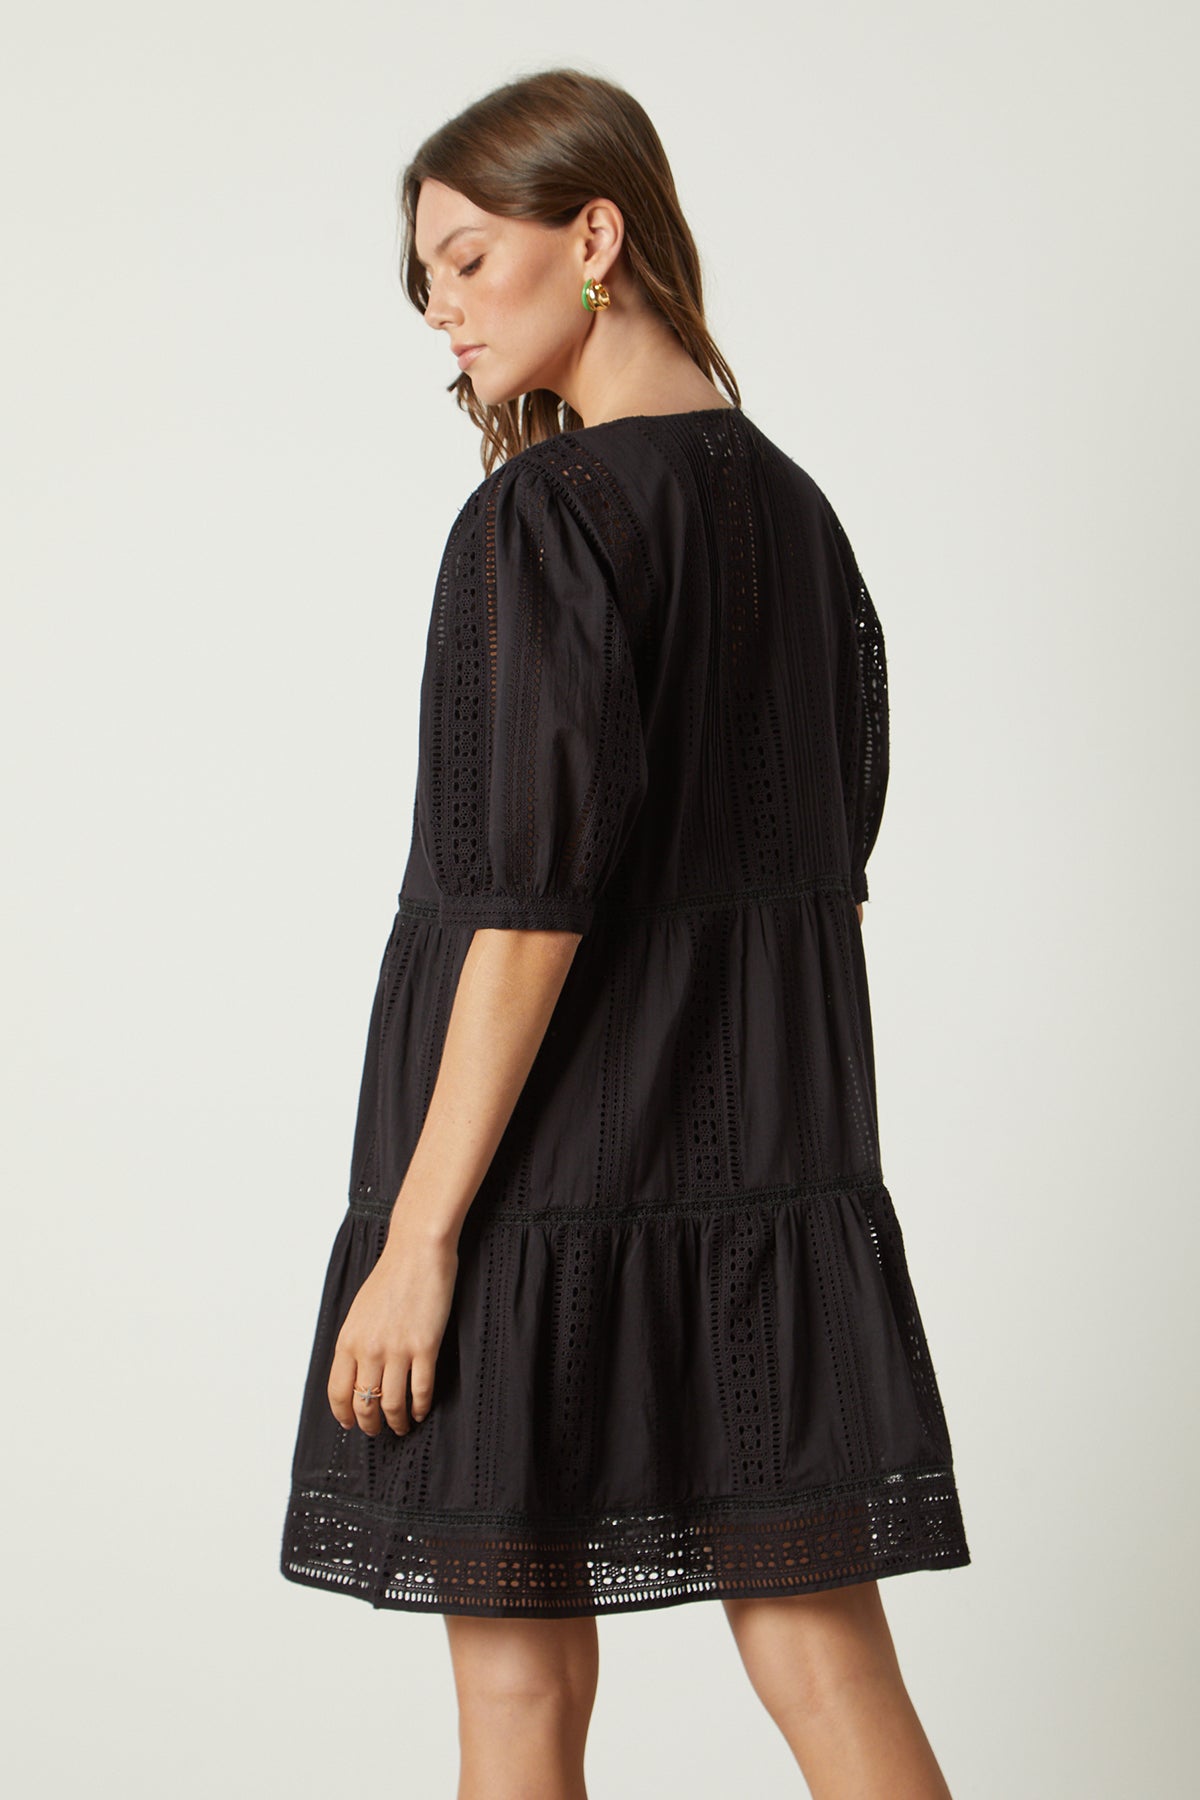 Margaret dress in embroidered black back-26022645104833